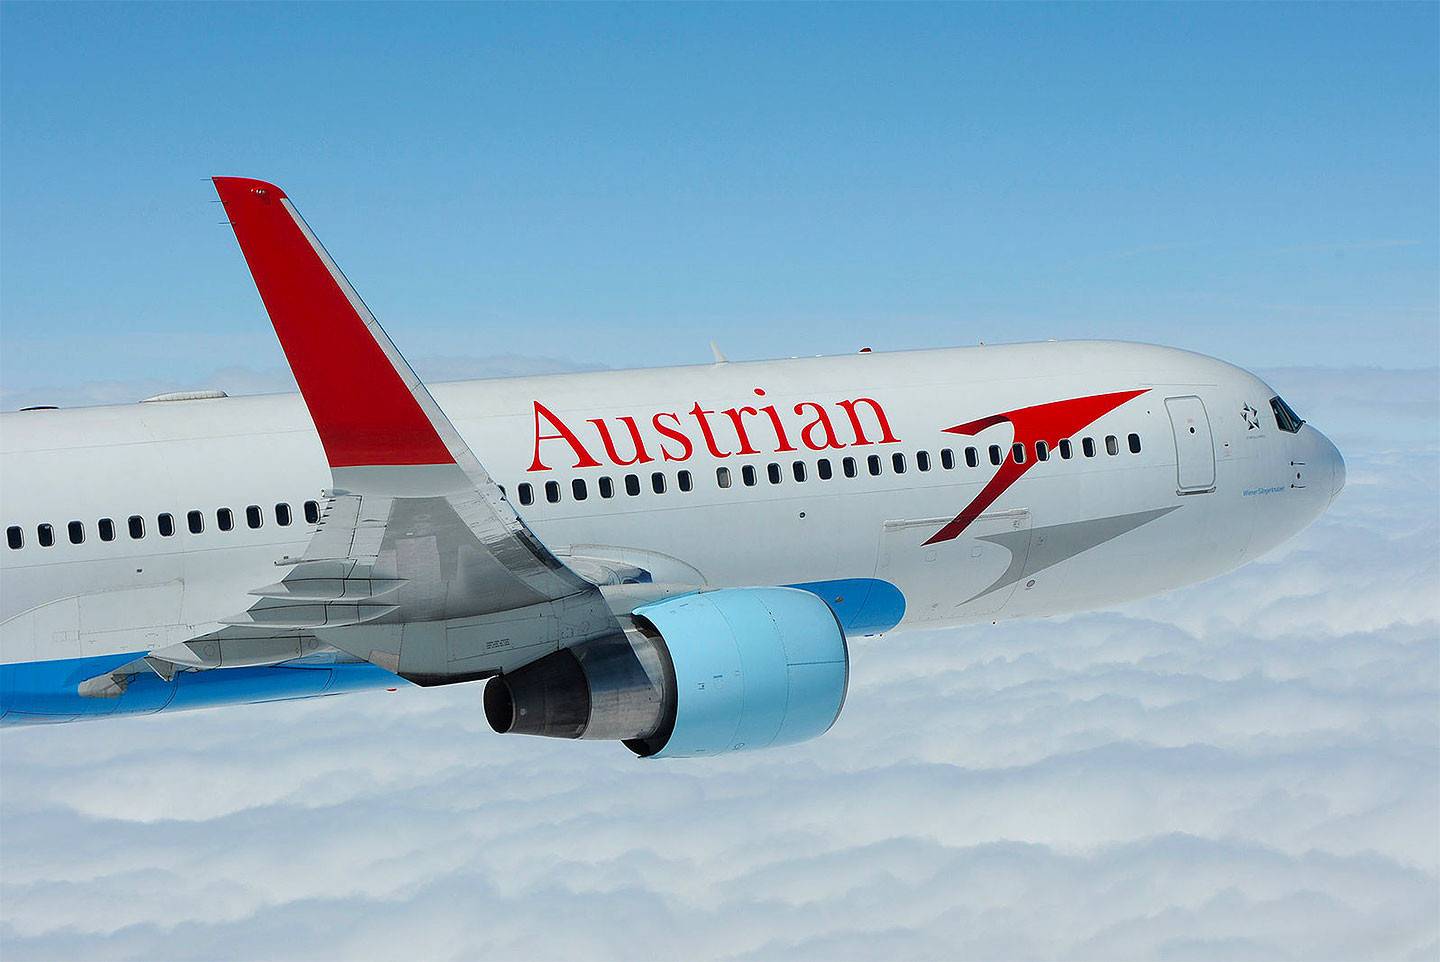 Jetzt flexibler buchen und sorgenfrei fliegen | austrian airlines